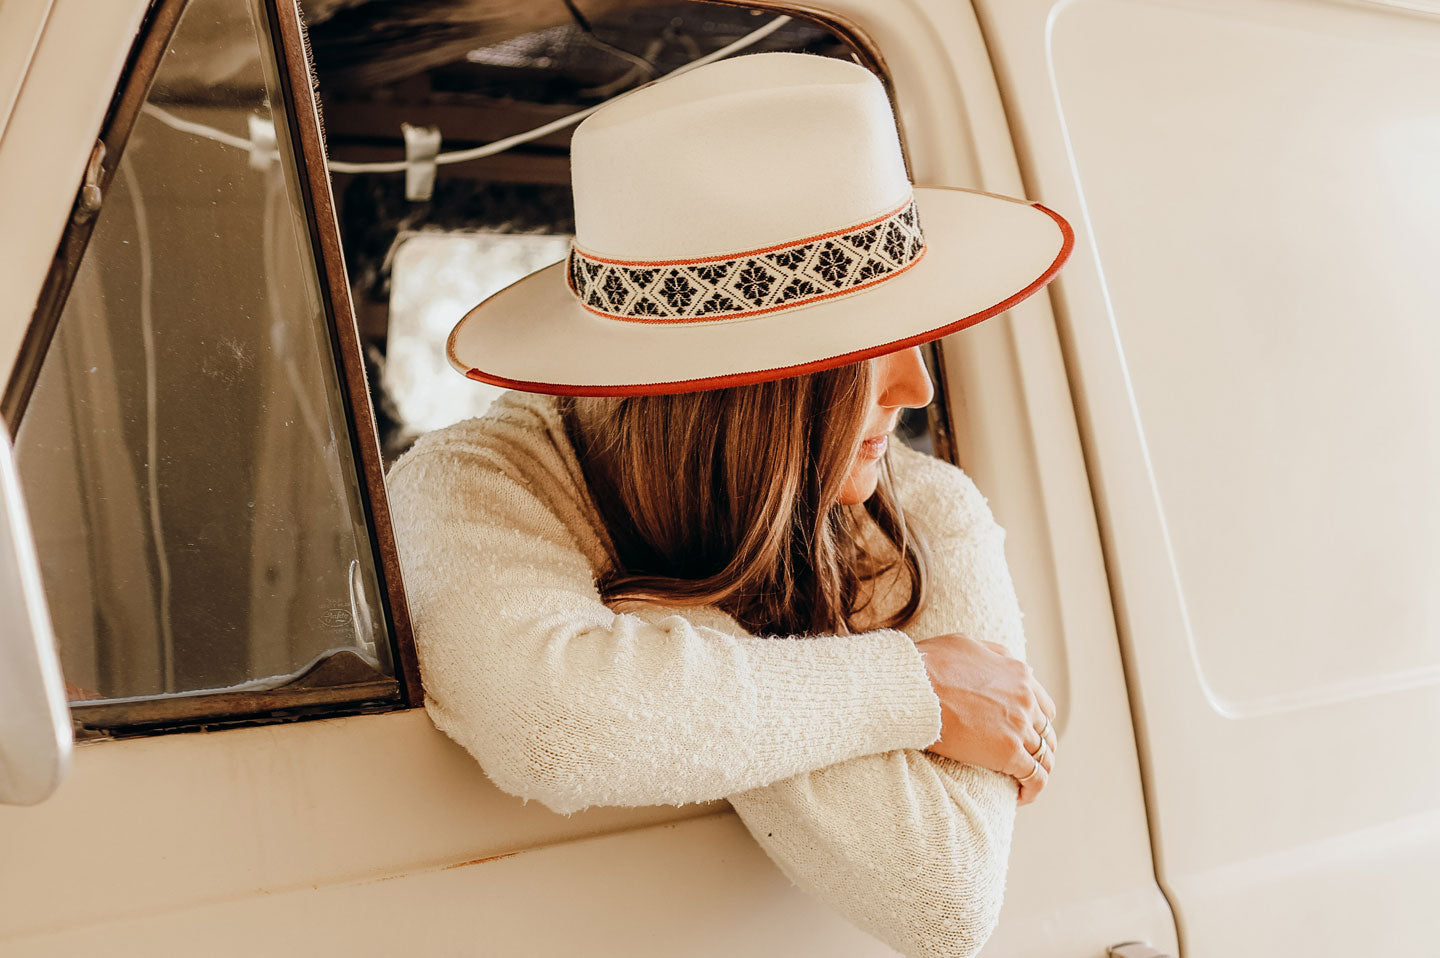 Brown Fedora Felt Hat Women Wide Brim: Tlaquepaque · Handmade in